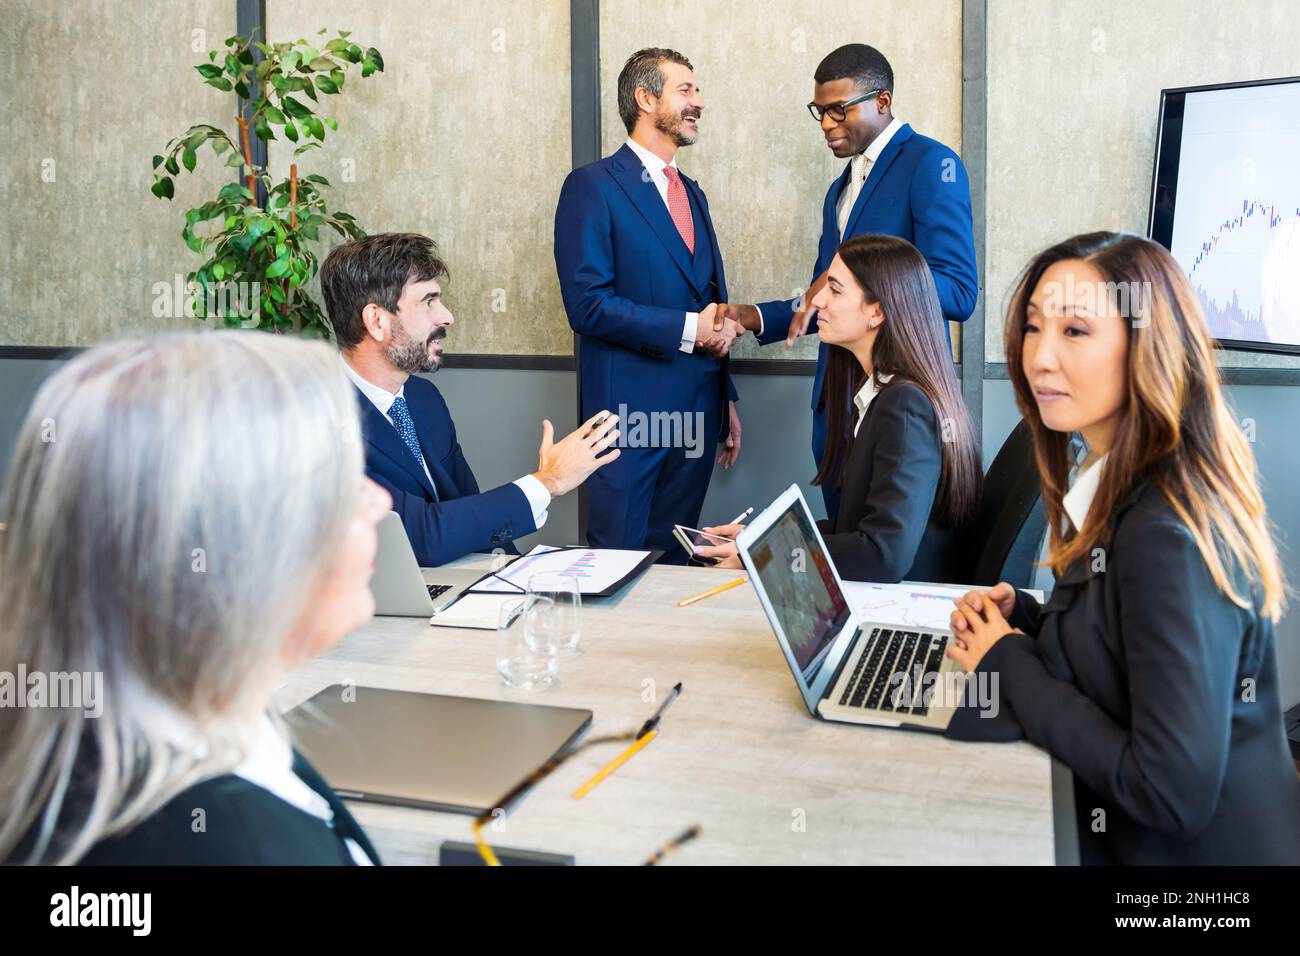 Eine Gruppe multiethnischer Kollegen versammelt sich im Sitzungssaal, während ein schwarzer Mann mit einer Kollegin die Hand schüttelt und eine asiatische Frau mit Laptop-Talki am Tisch sitzt Stockfoto